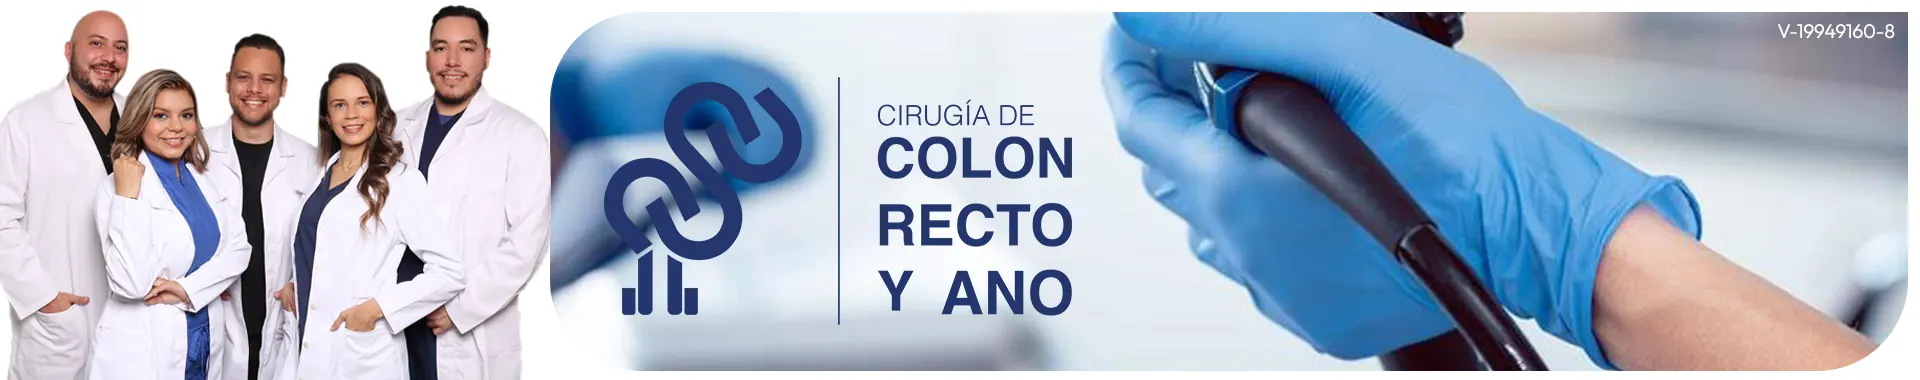 Imagen 1 del perfil de Cirugía de Colon Recto y Ano